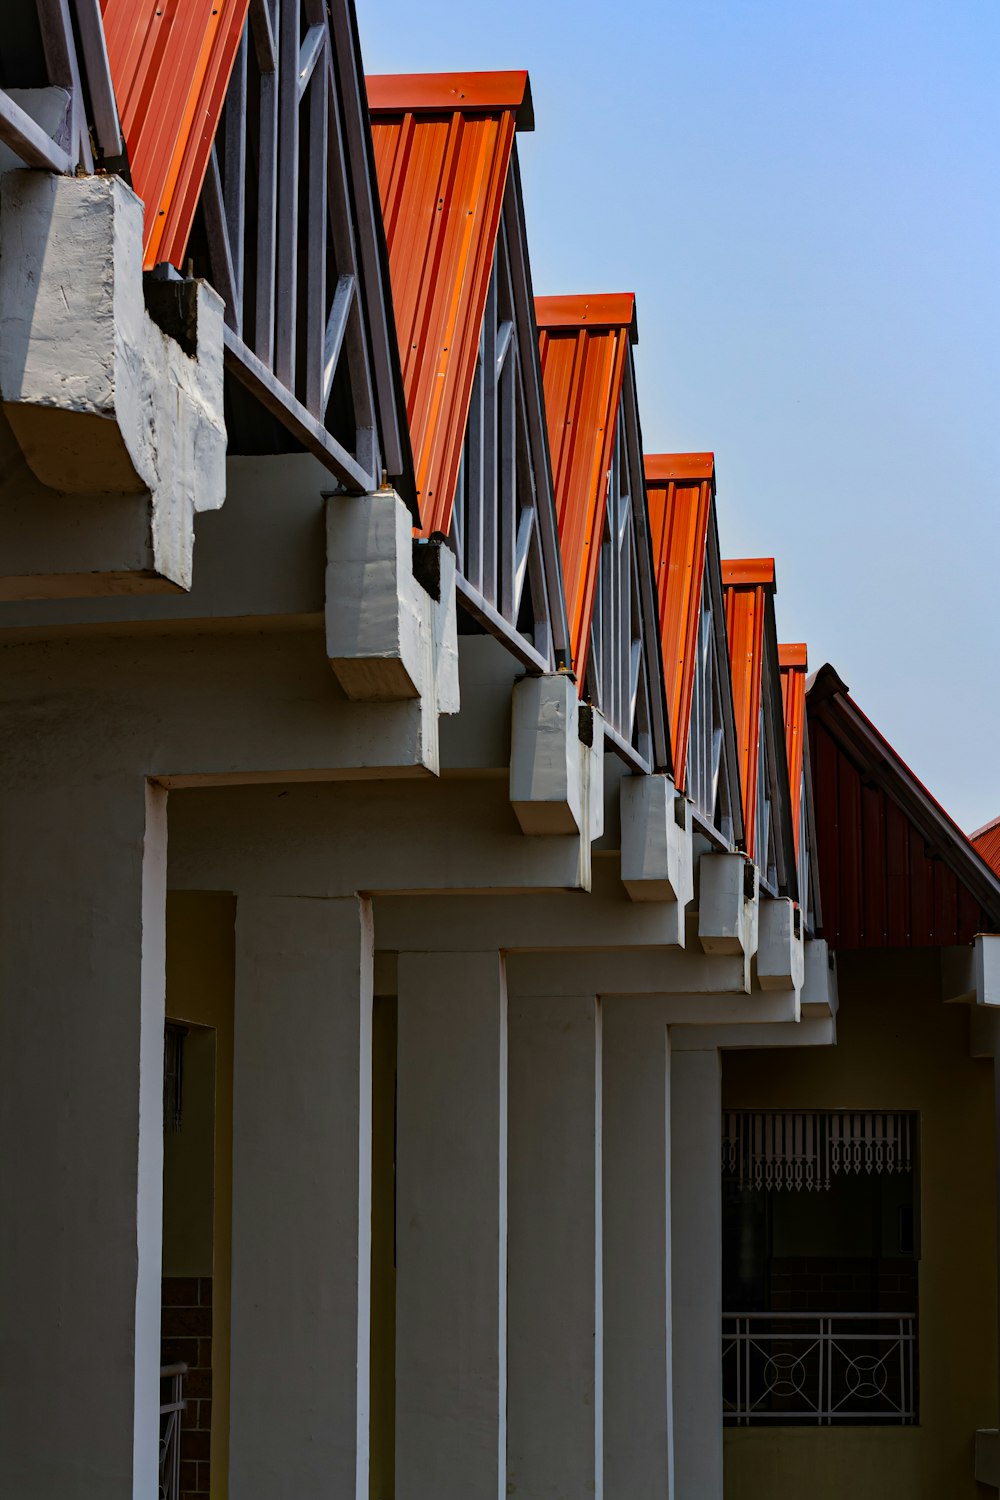 eine reihe orangefarbener dachziegel auf einem gebäude